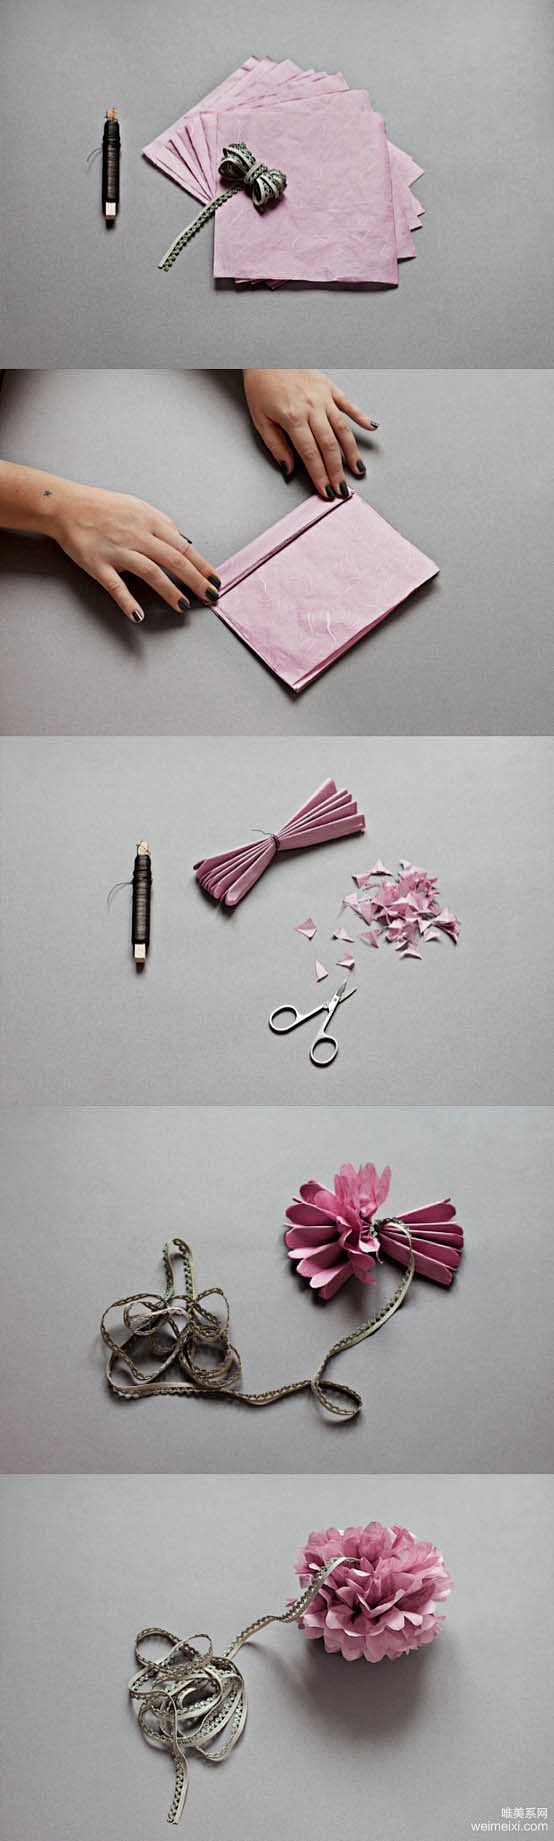 纸花球的做法 手工制作纸花图片教程 纸花...